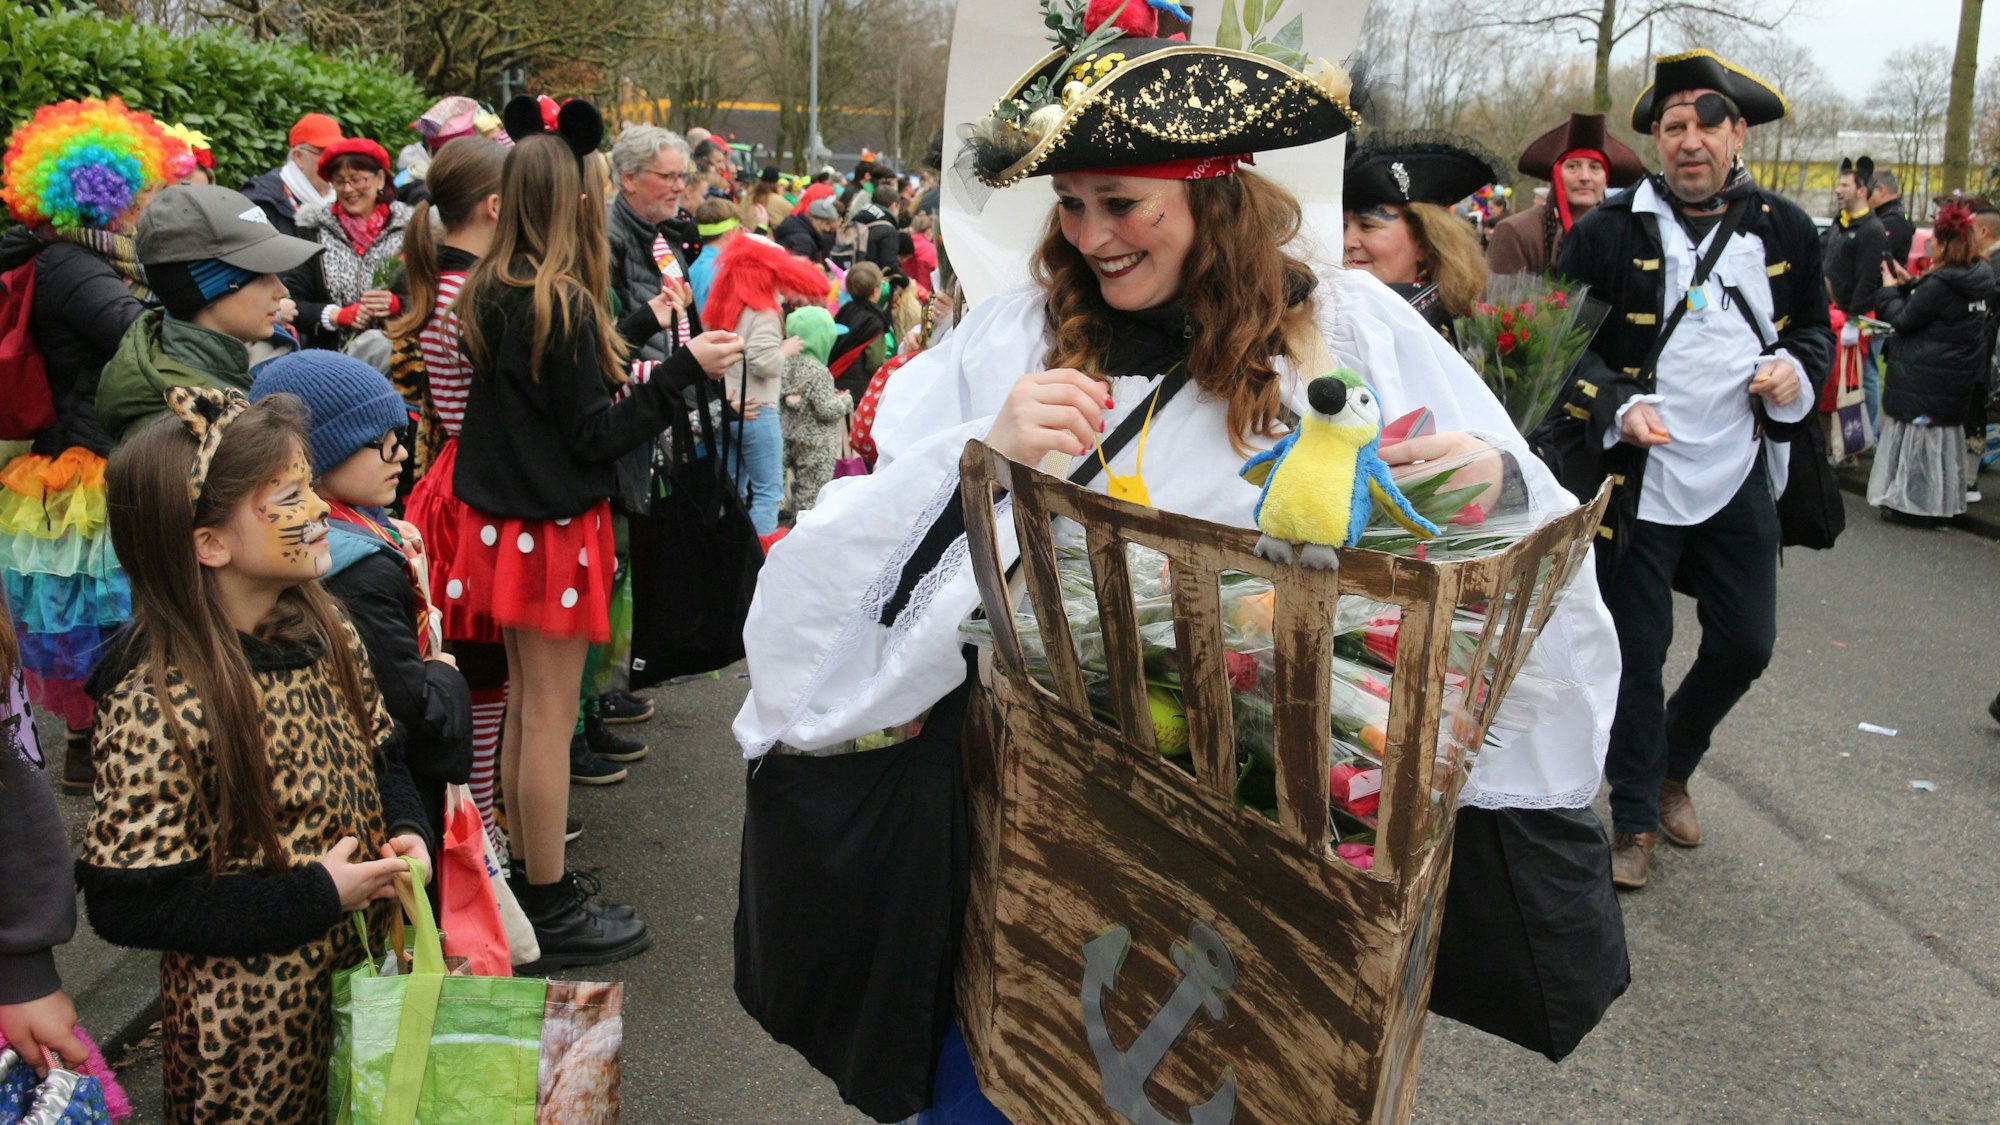 Auf dem Foto sind die Piraten der Brauweiler Pänz zu sehen. Sie verteilen Wurfmaterial an Kinder am Straßenrand.